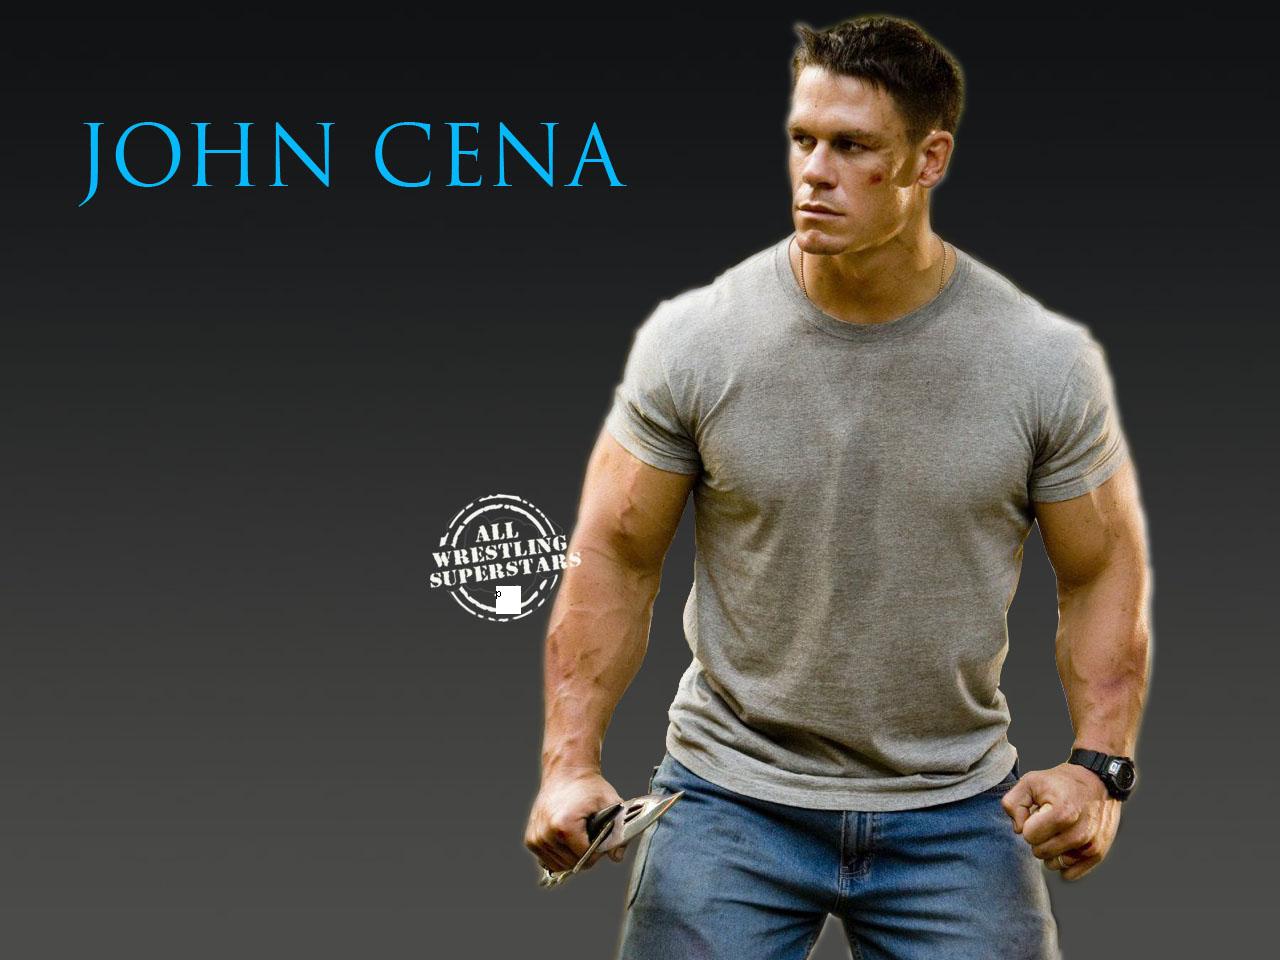 John Cena Wallpaper For Desktop HD On